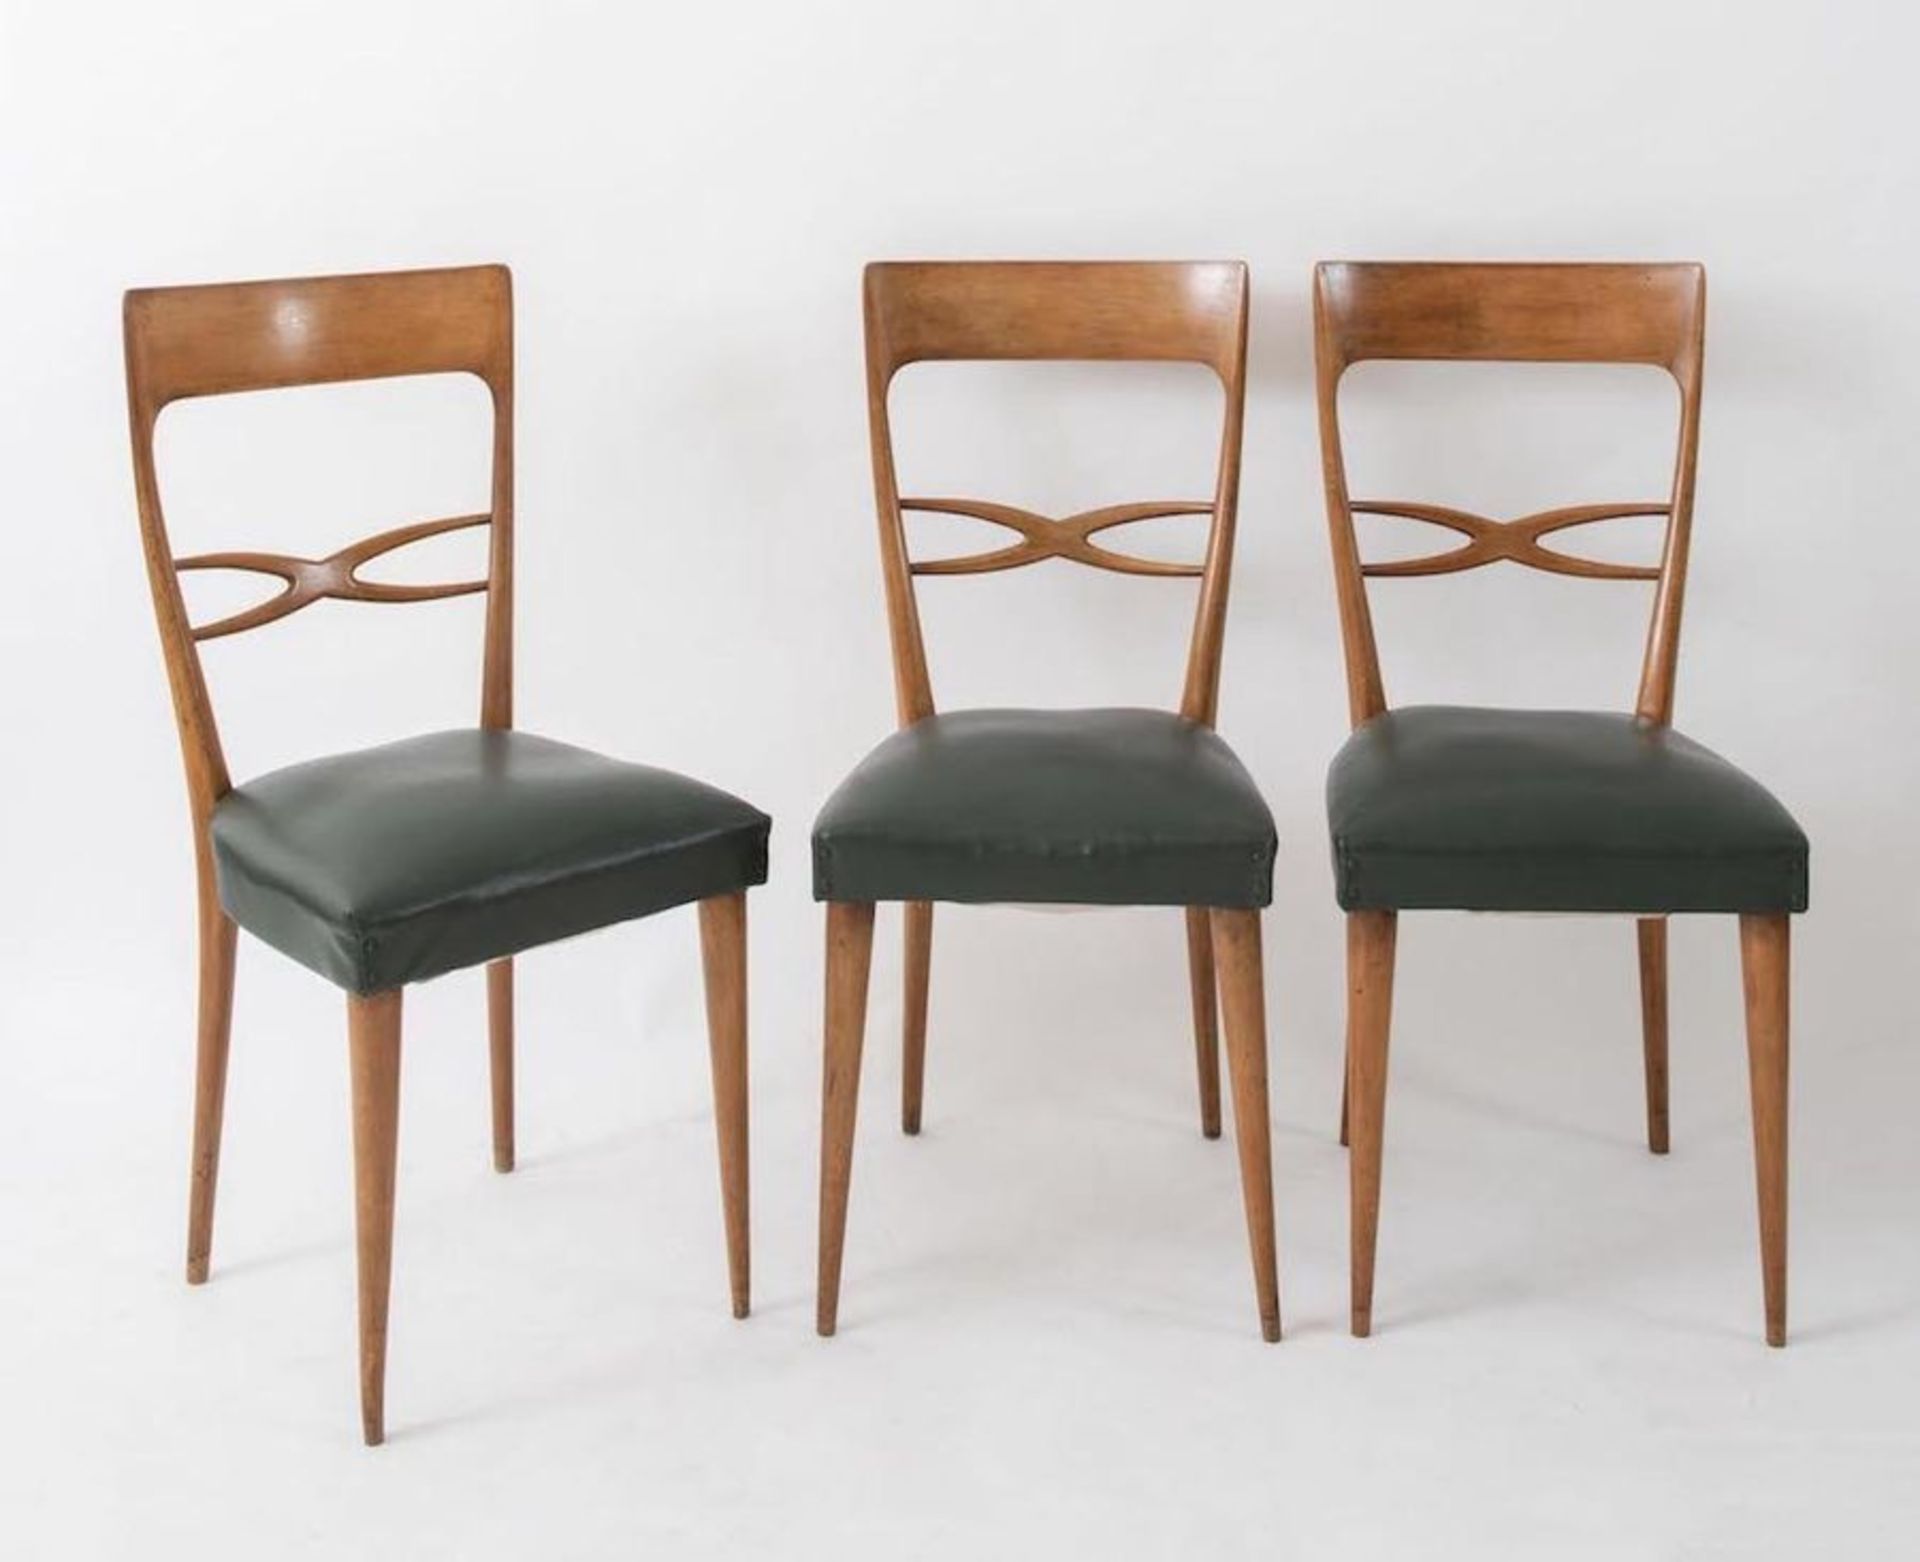 MELCHIORRE BEGA, attr. Sei sedie in legno con rivestimento in pelle. Prod. Italia, 1960 ca. Cm 95x42 - Bild 2 aus 3